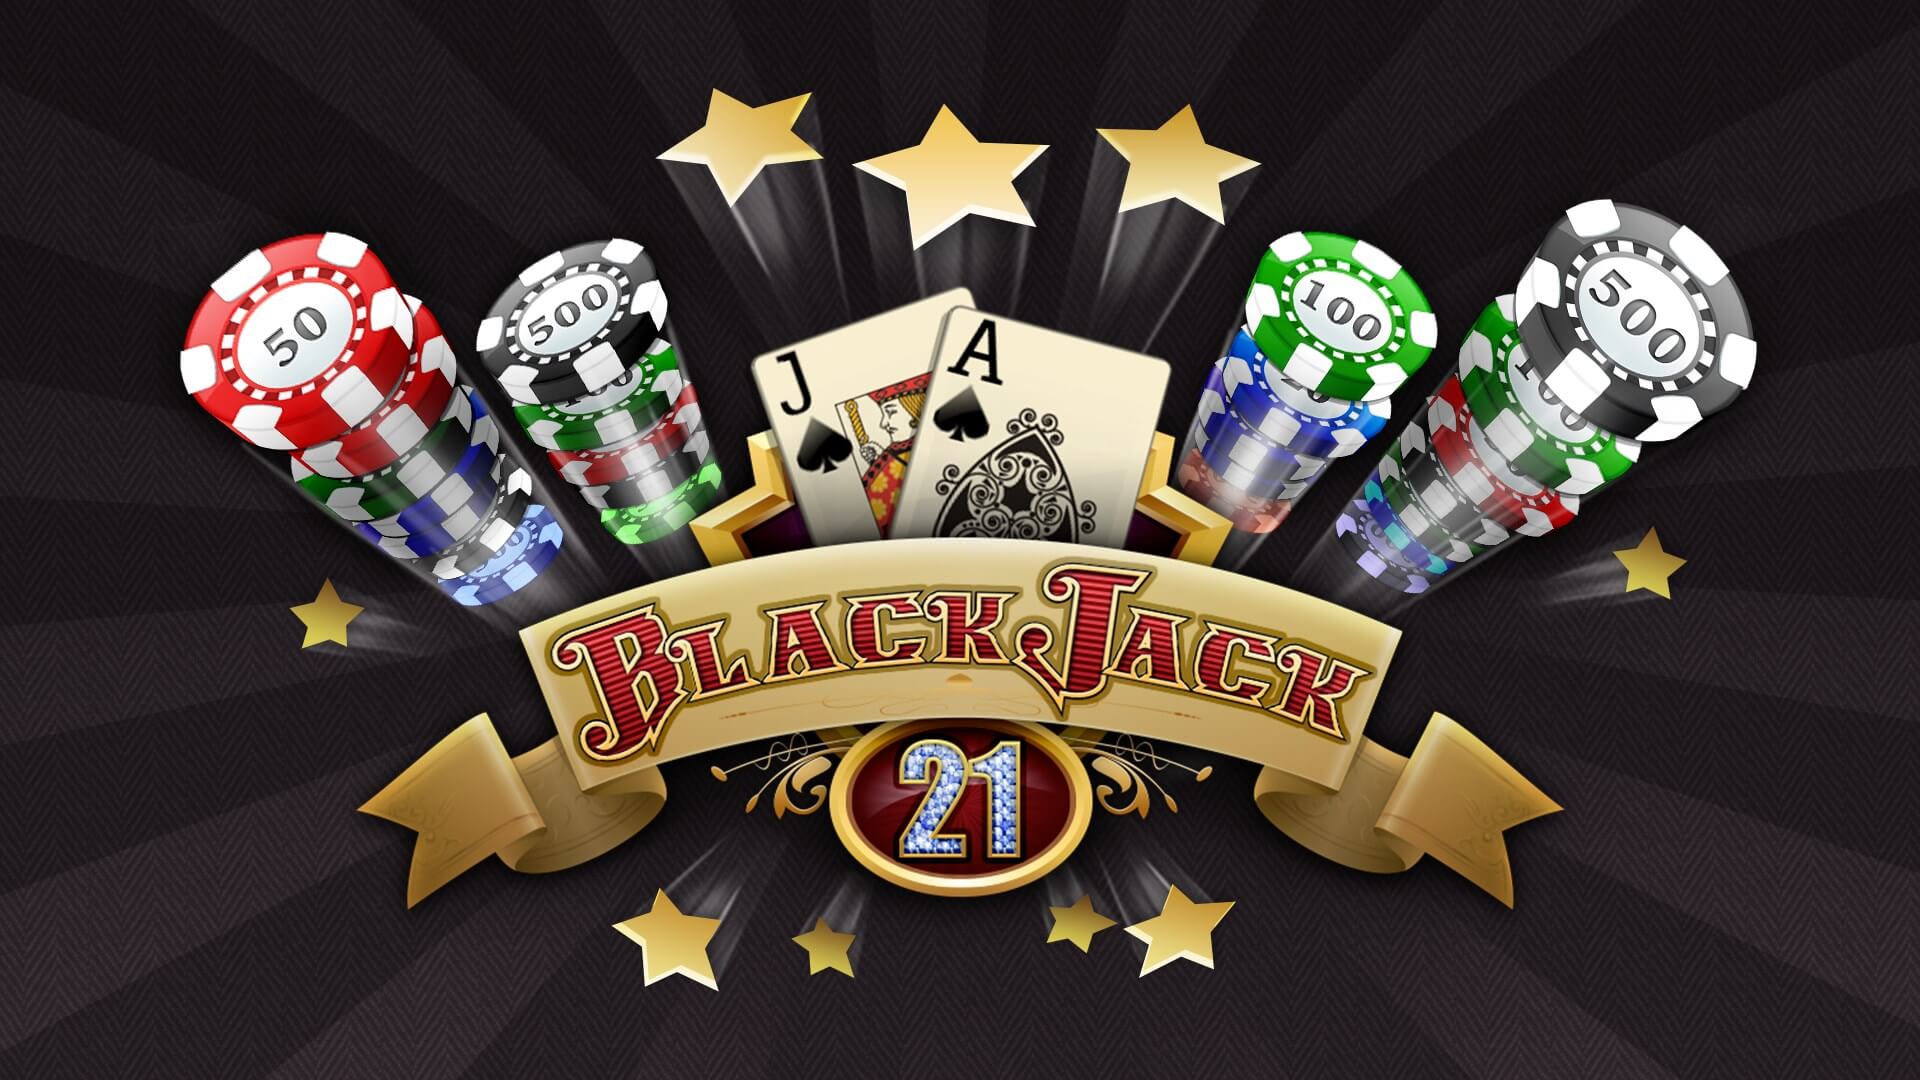 BlackJack 21 İndirme Siteleri